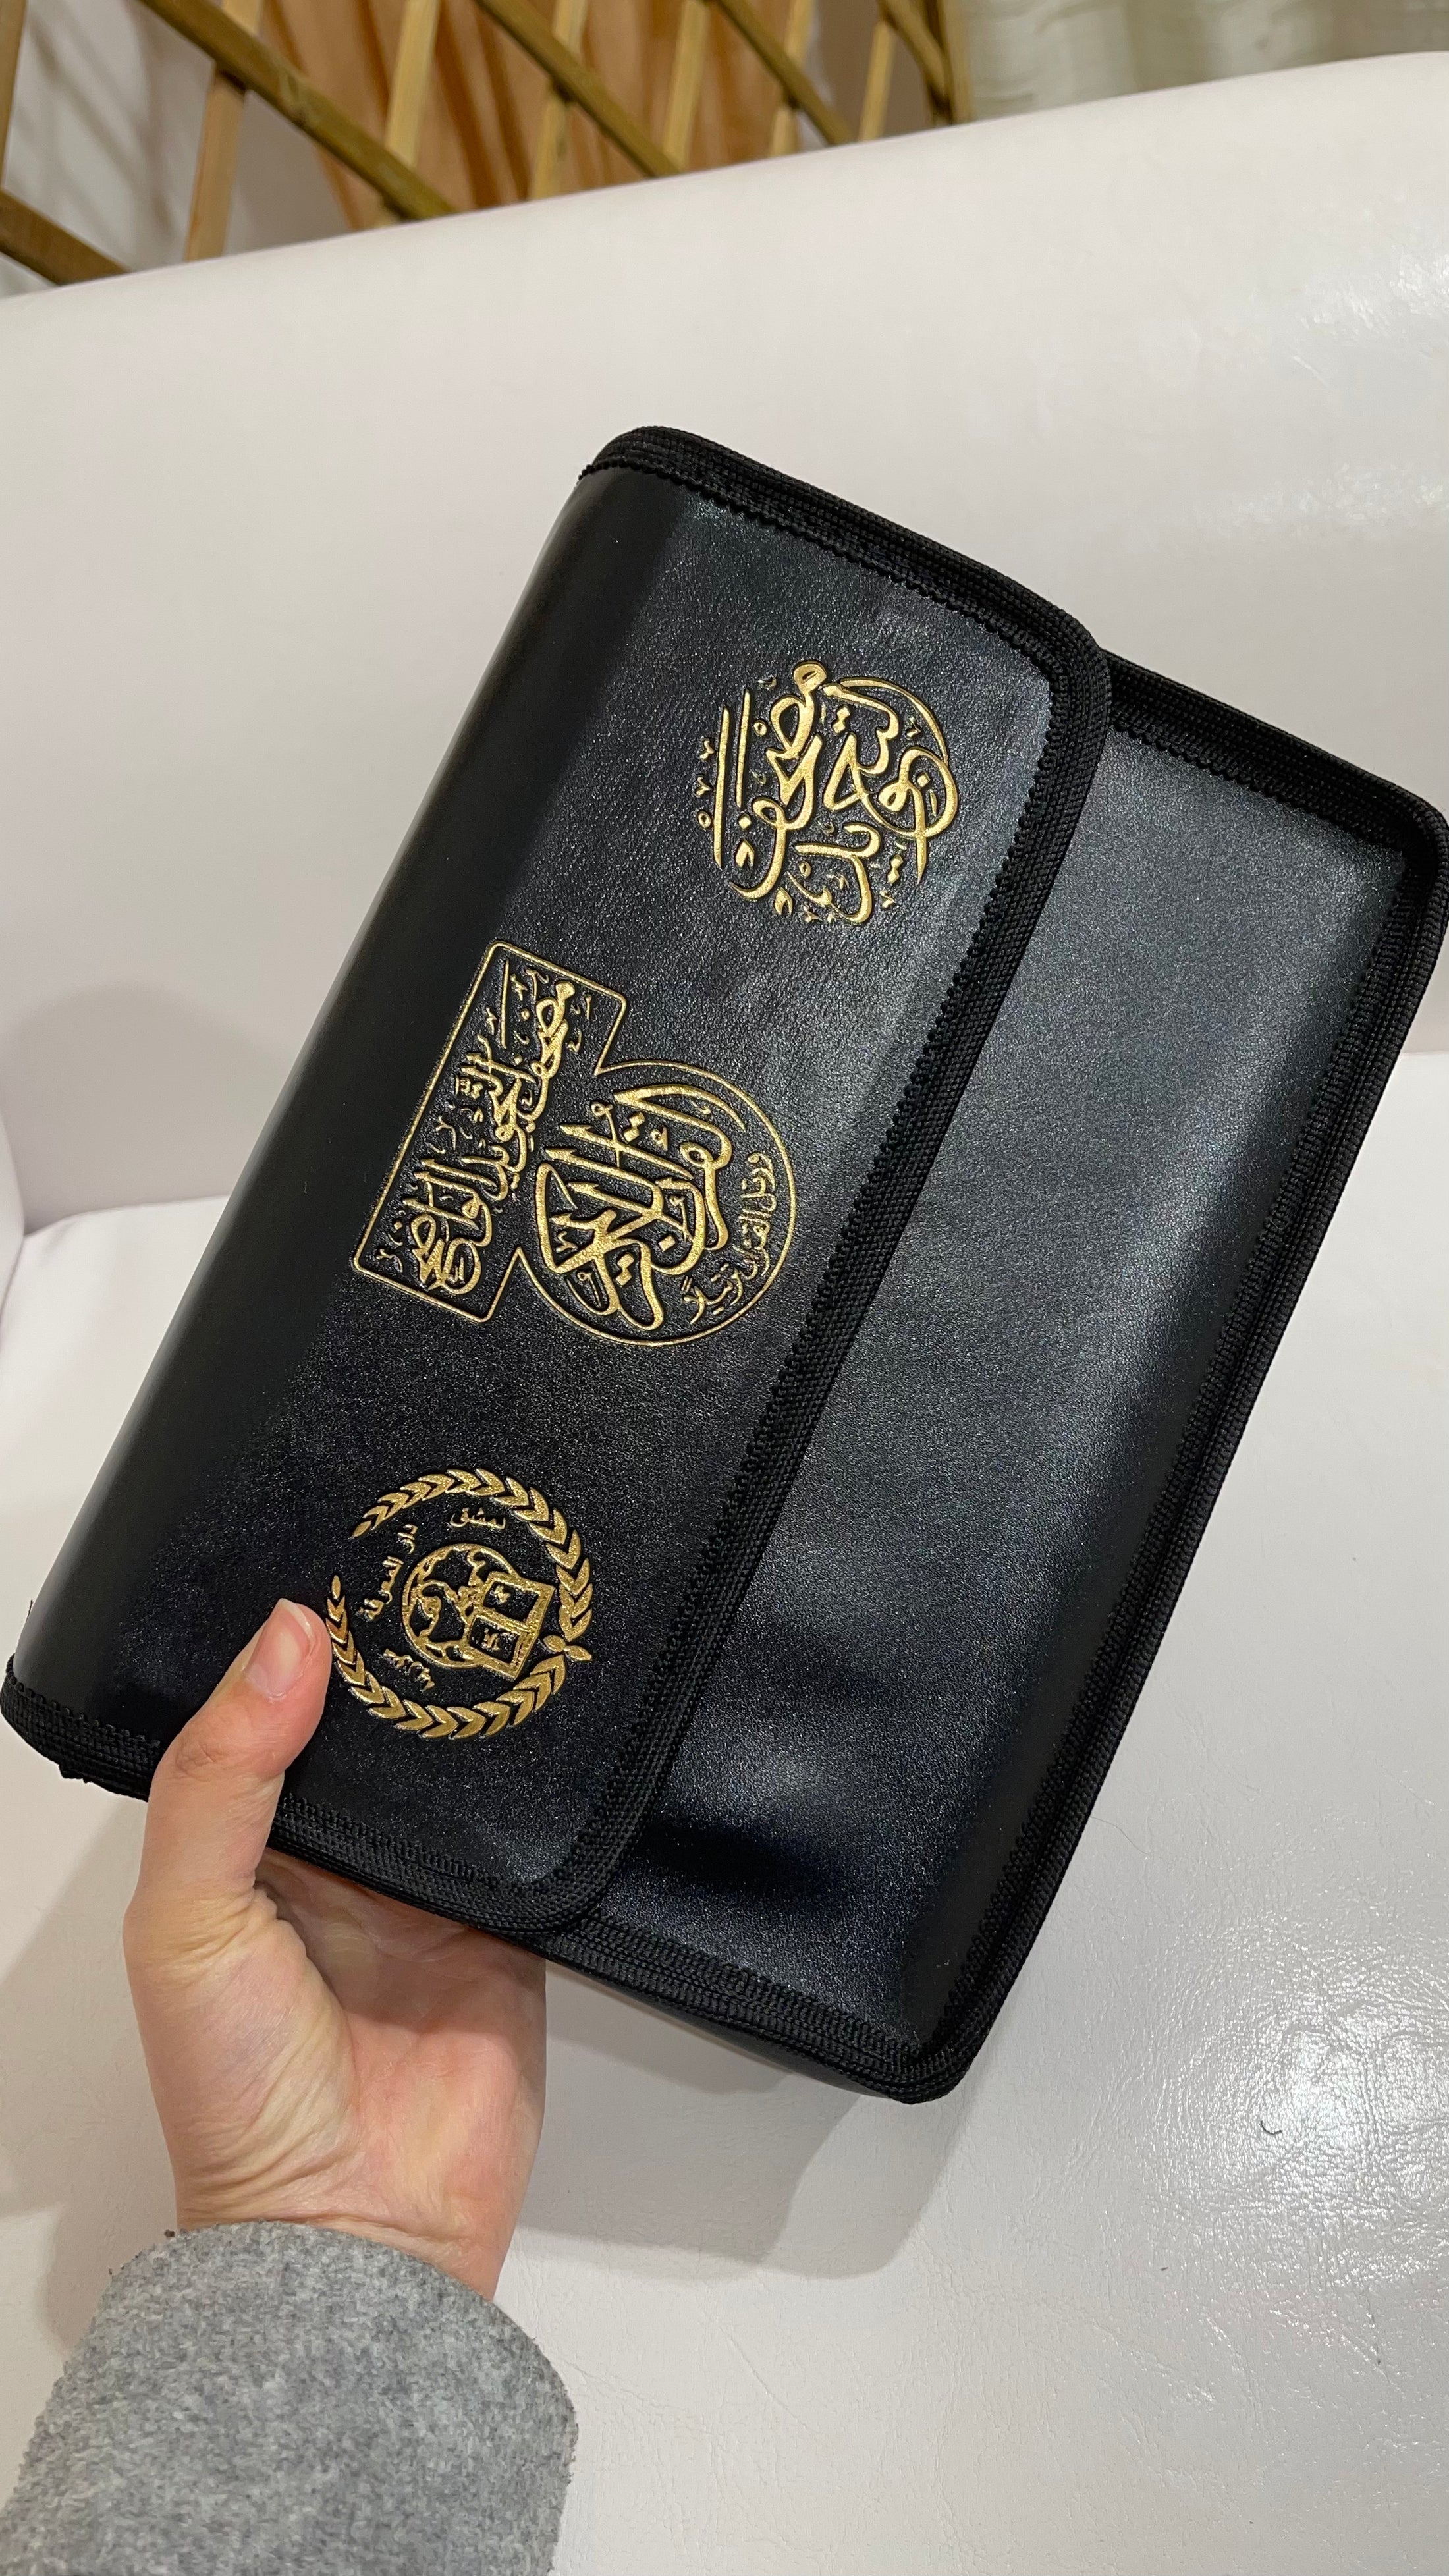 Corano tajwid khatma - hafs- Hijab Paradise - arabo - Corano è completo di tutte le 114 sure divise in 30 libricini - custodia contenente il corano diviso in capitoli